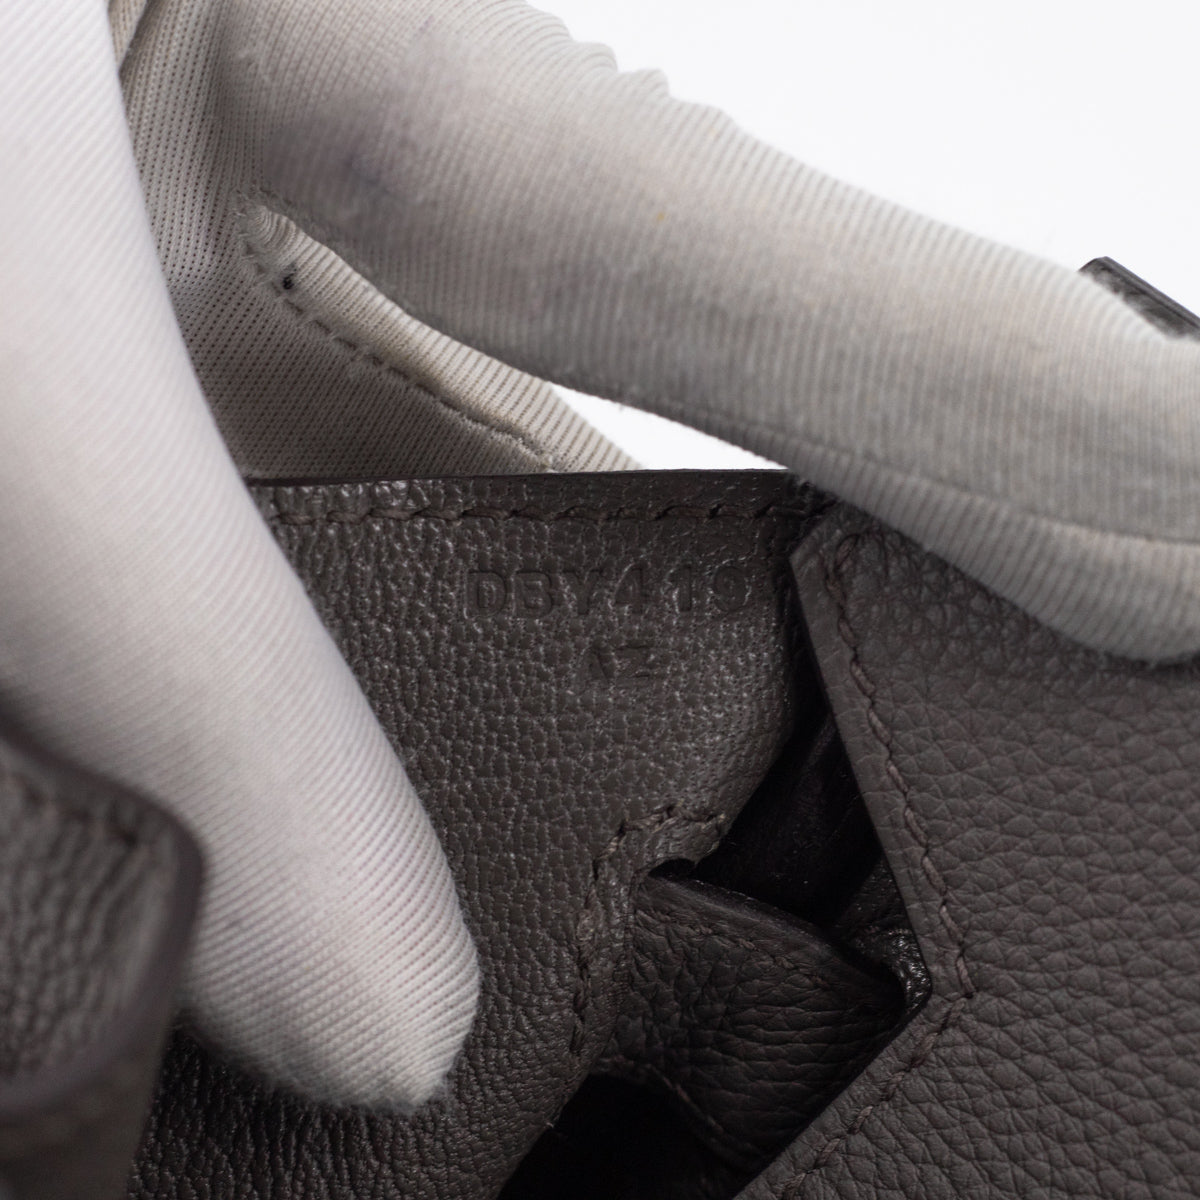 Hermès Birkin Review nach 1 ½ Jahren - B30 gris etain Togo Leder